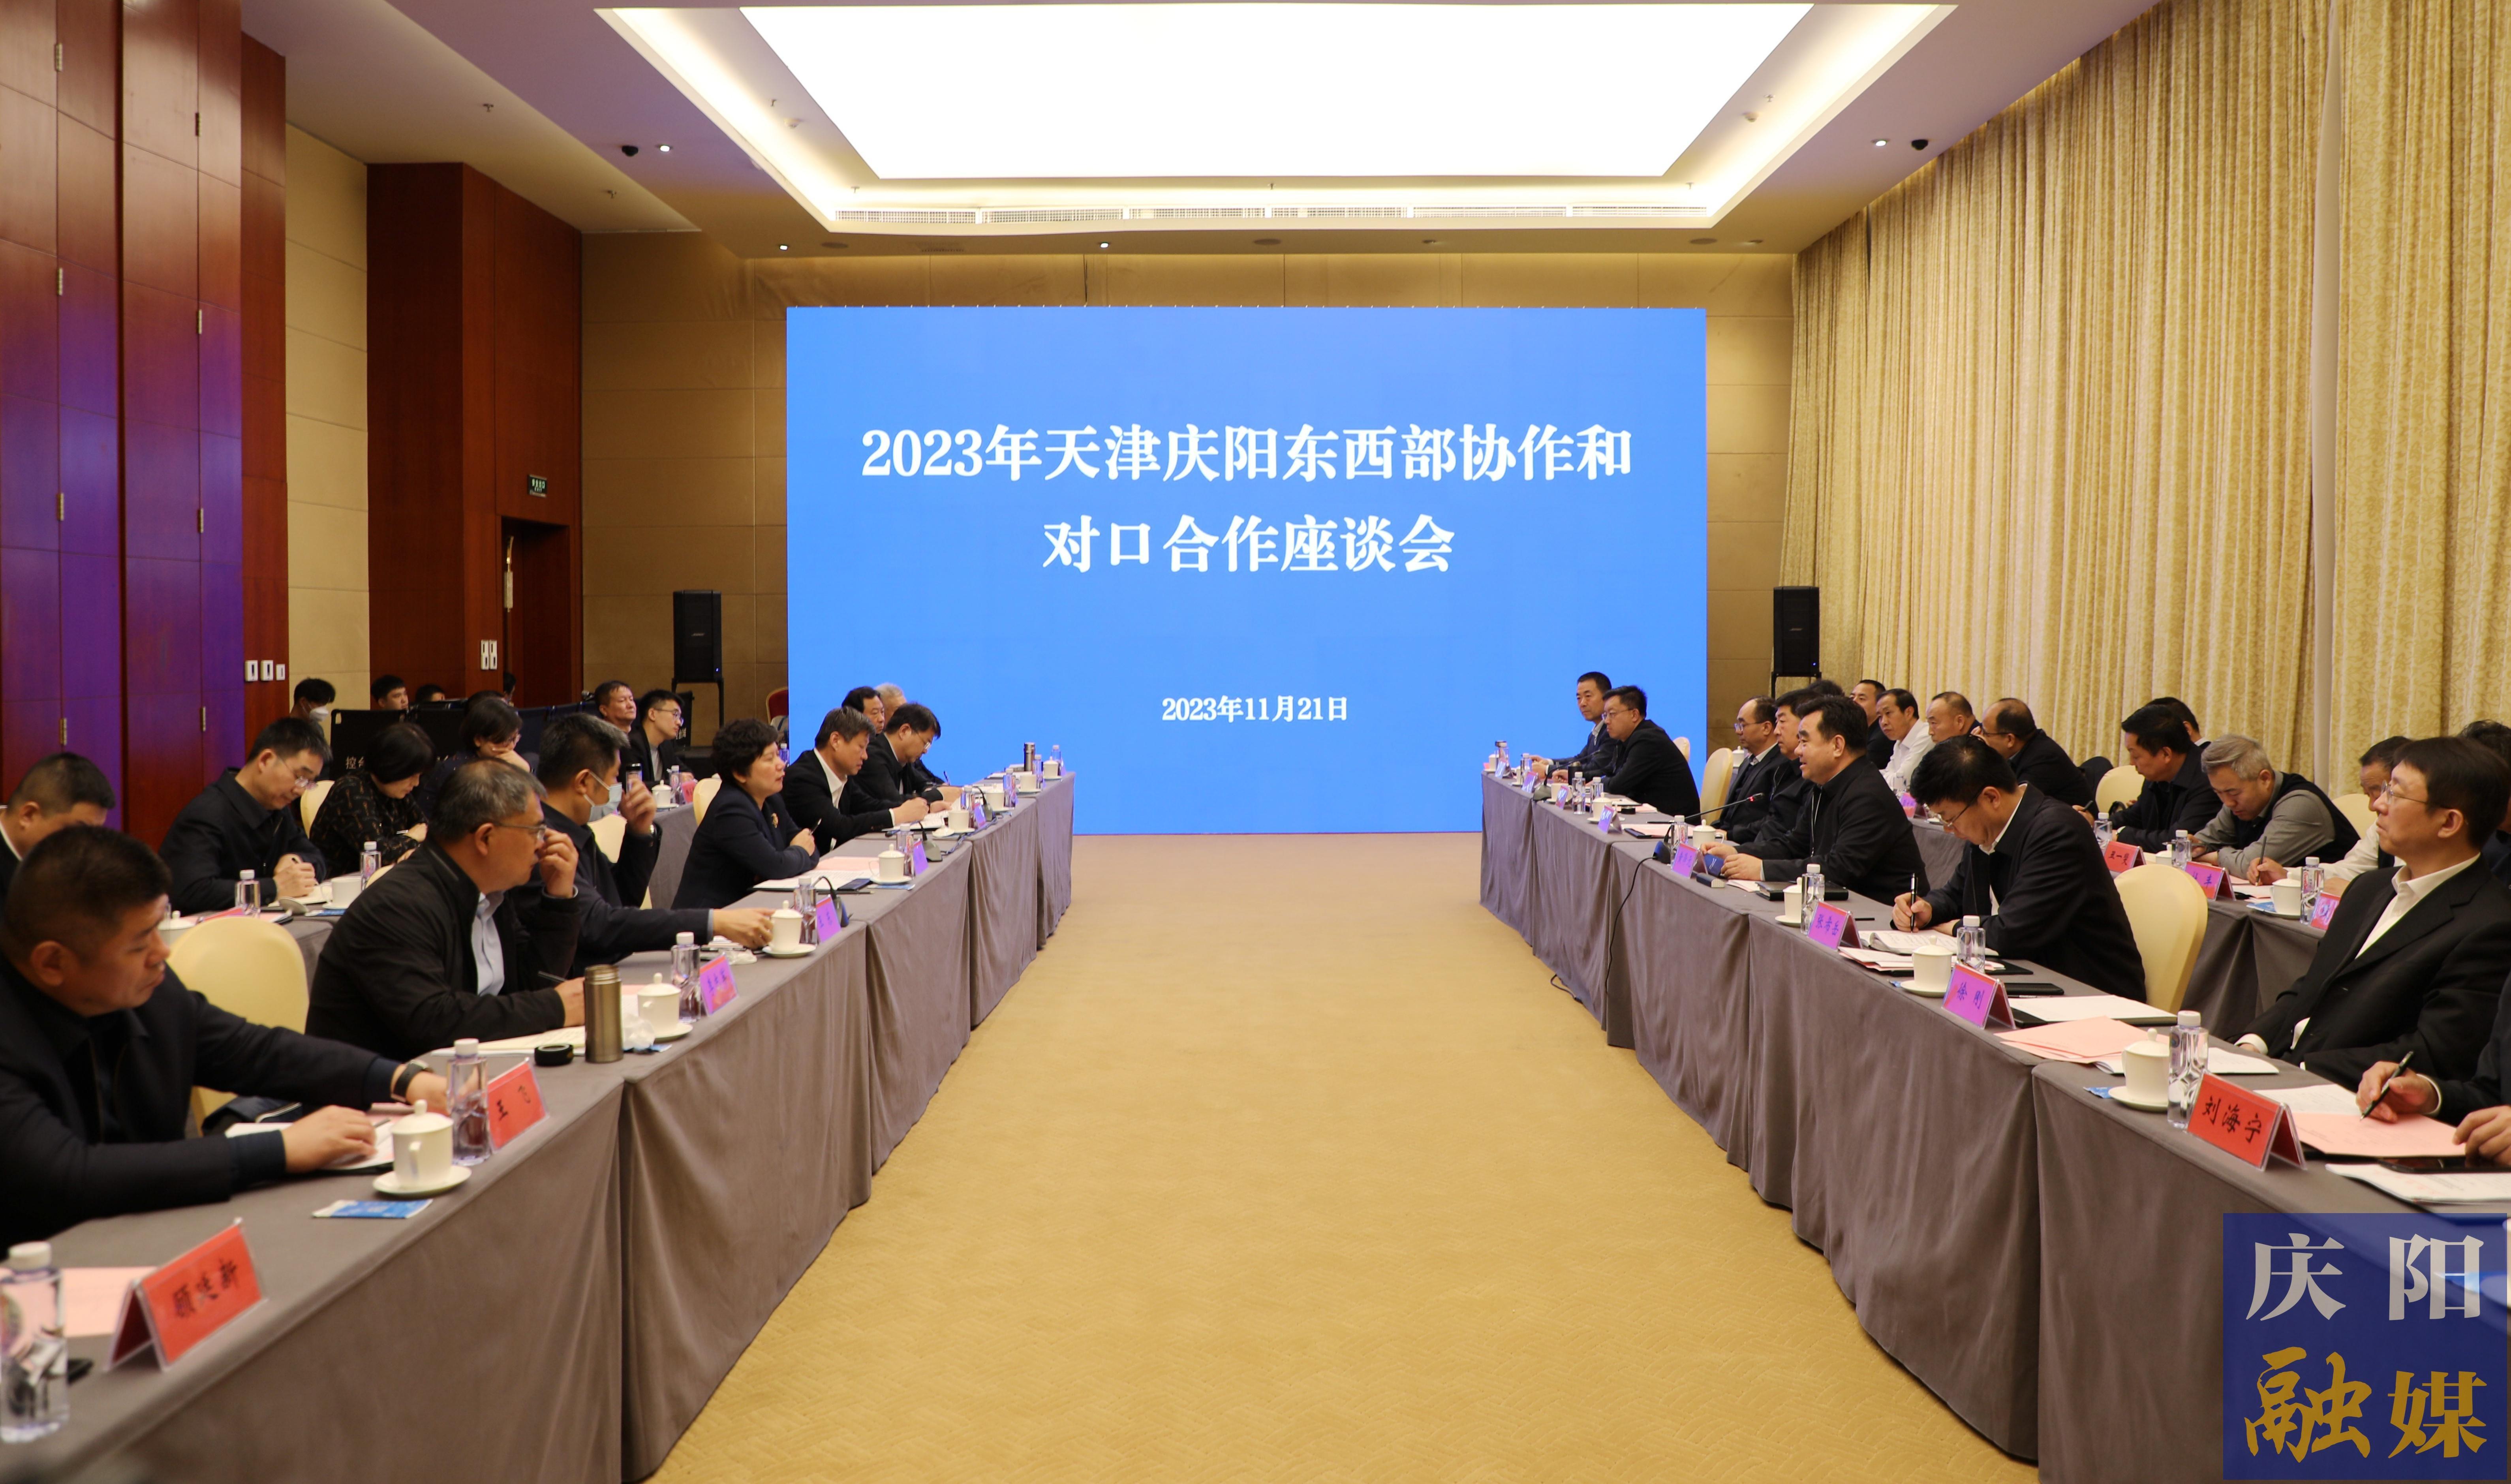 2023年天津庆阳东西部协作和对口合作座谈会议在天津召开 张玲黄泽元讲话